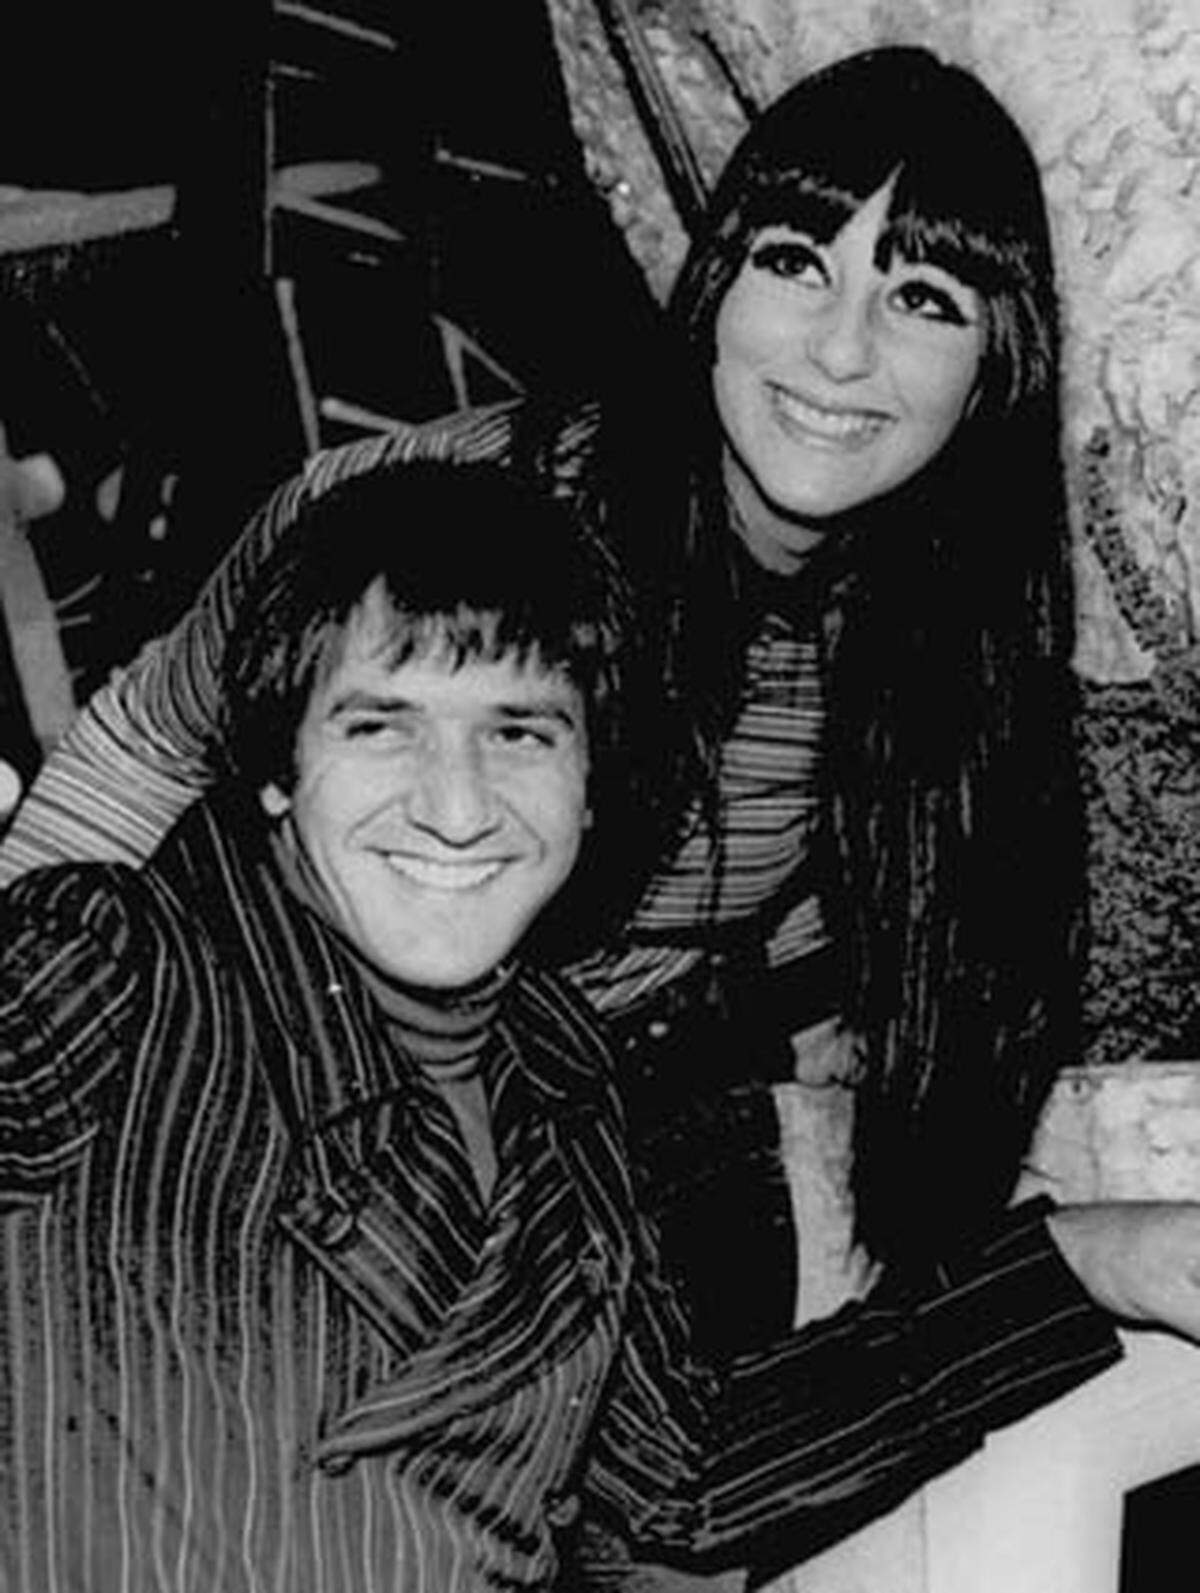 Das Duo 'Sonny und Cher' wurde mit Liedern wie 'I got you, Babe' bekannt. Cher verfolgte ihre musikalische und schauspielerische Karriere erfolgreich bis zum heutigen Tag. Ihr damaliger Ehemann Sonny entschied sich aber, die politische Bühne zu betreten. Der Sänger und Schauspieler wurde mit seinem richtigen Namen Salvatore Phillip Bono Bürgermeister von Palm Springs in Kalifornien und gewann 1994 als Republikaner einen Sitz im US-Repräsentantenhaus. 1998 erlitt er tödliche Verletzungen bei einem Skiunfall.